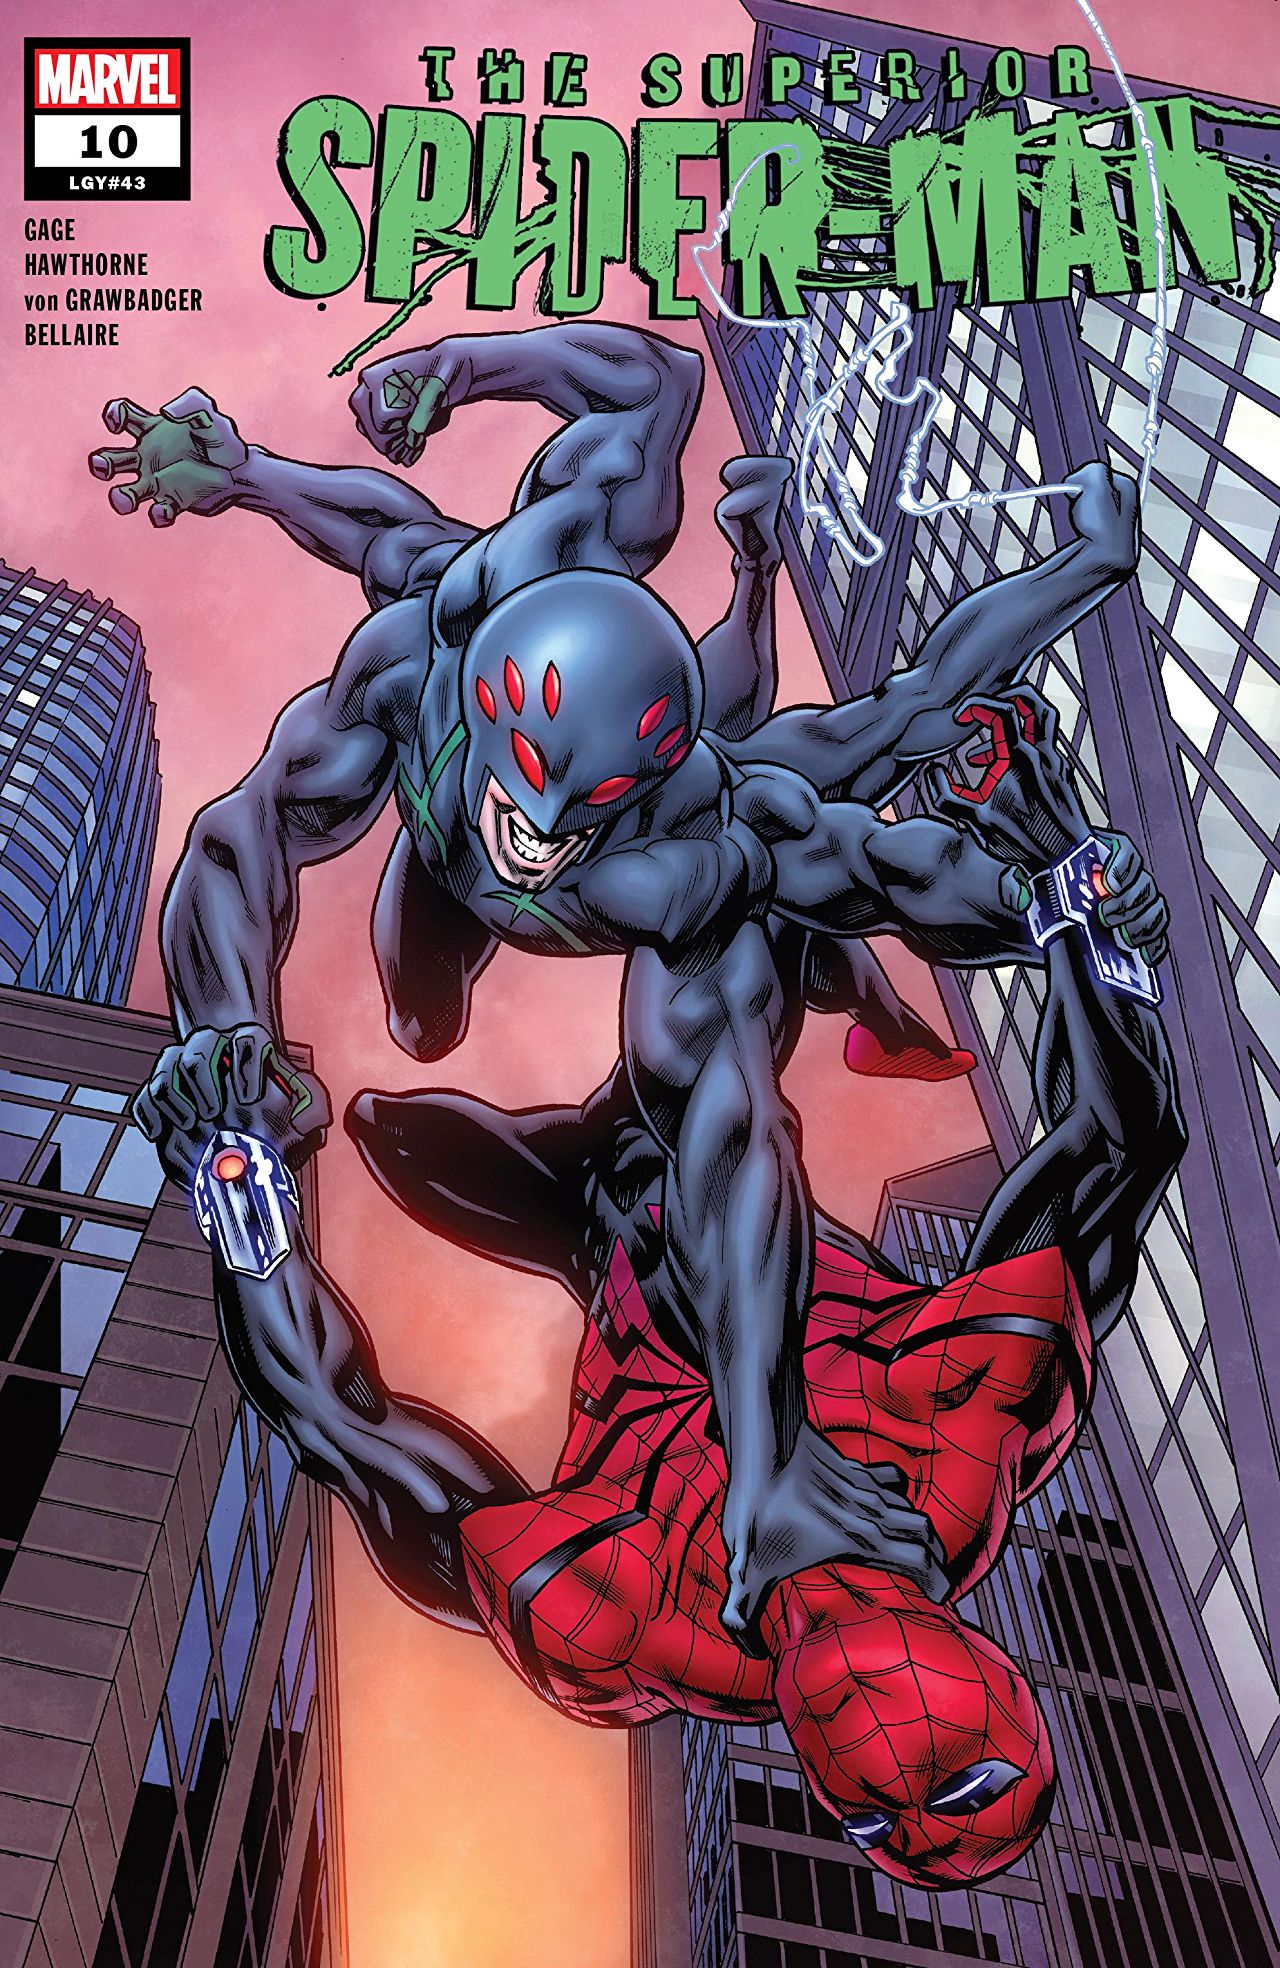 Superior Spider-Man Vol 2 10 | Marvel Database | Fandom